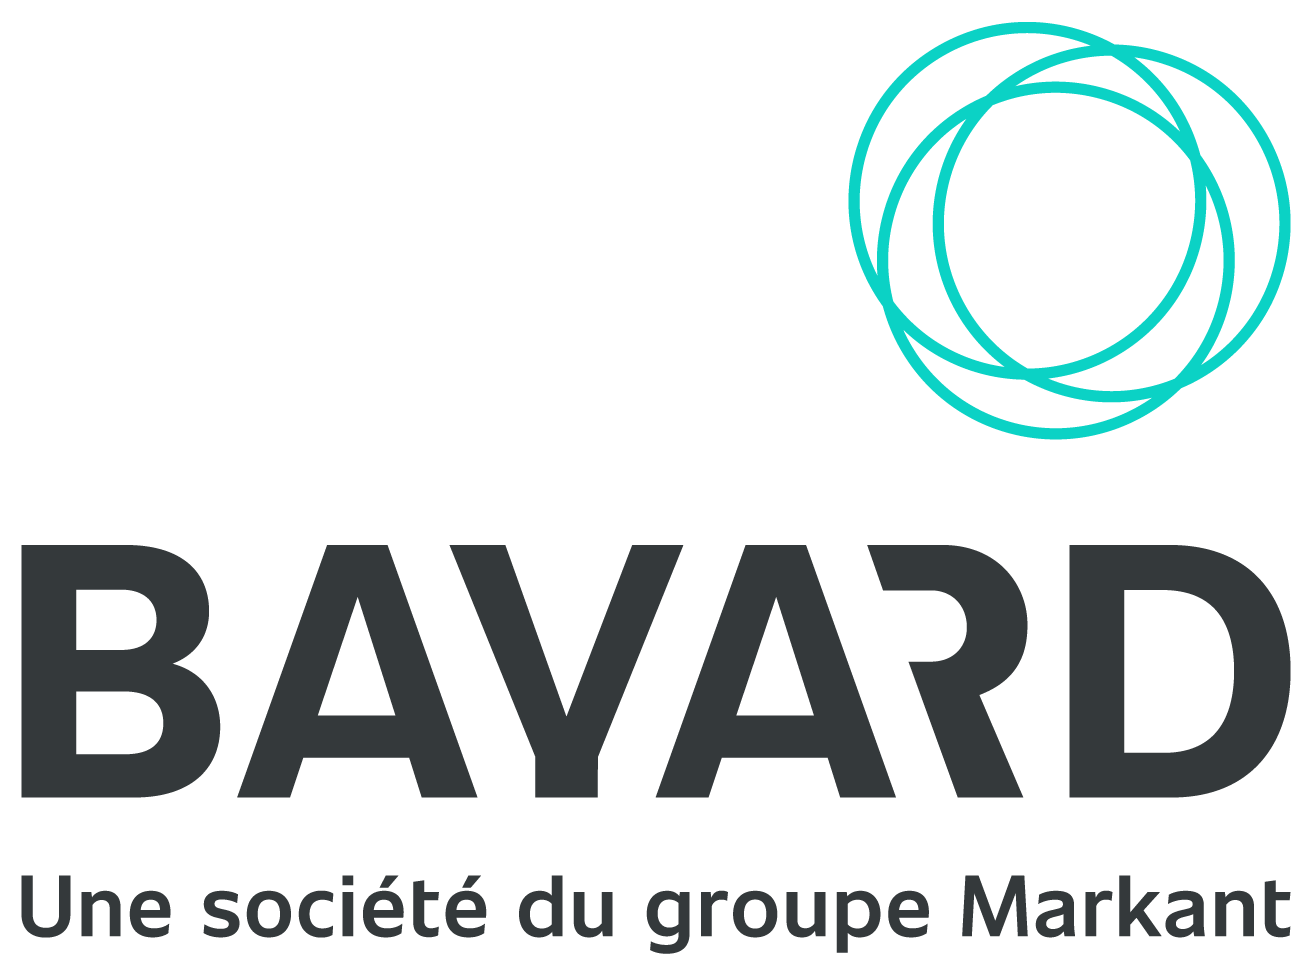 BAYARD Markant Logo